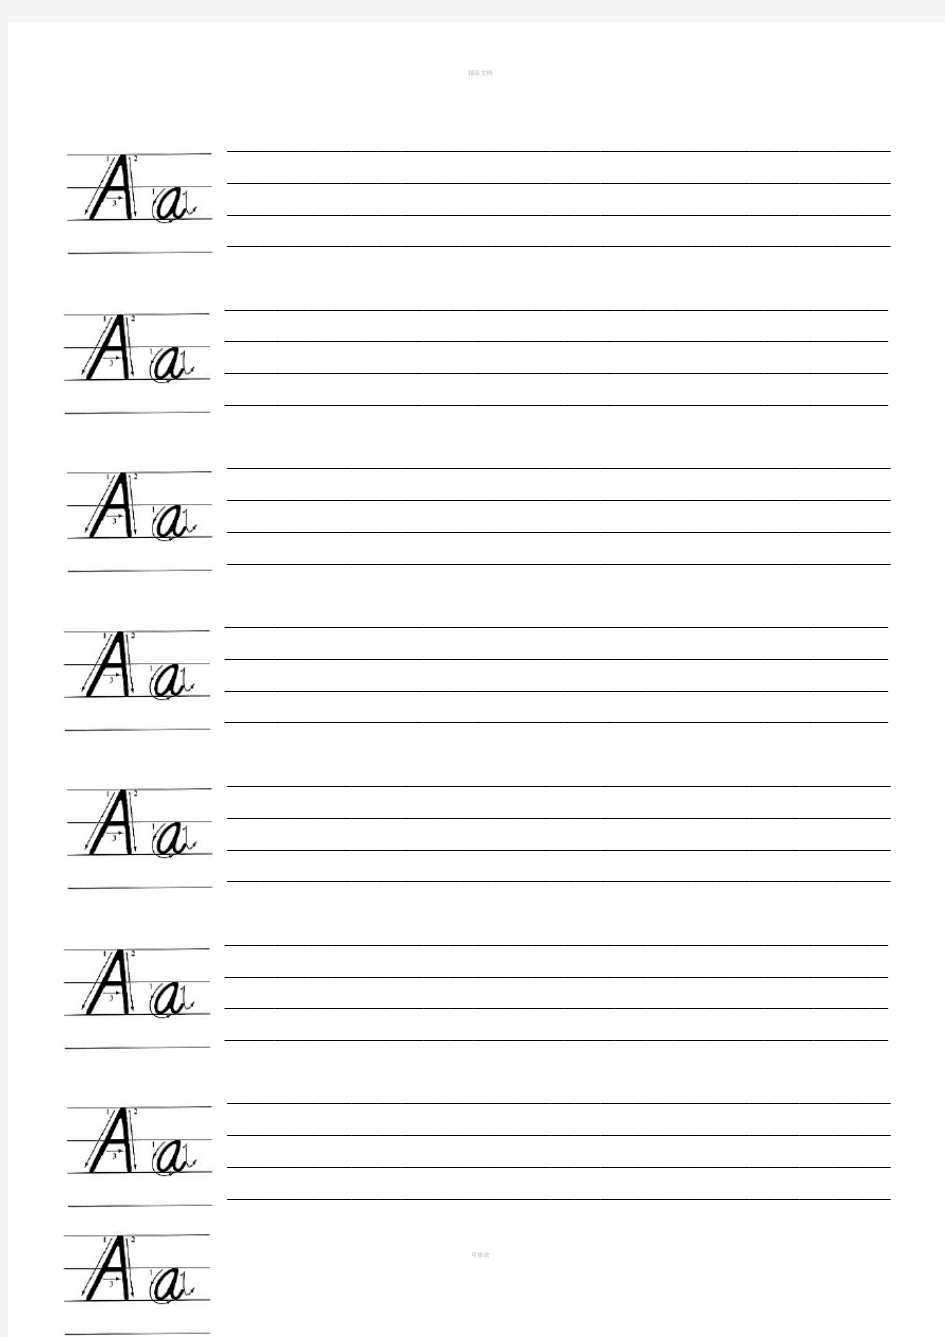 26个英文字母书写标准及练习(完美打印版)